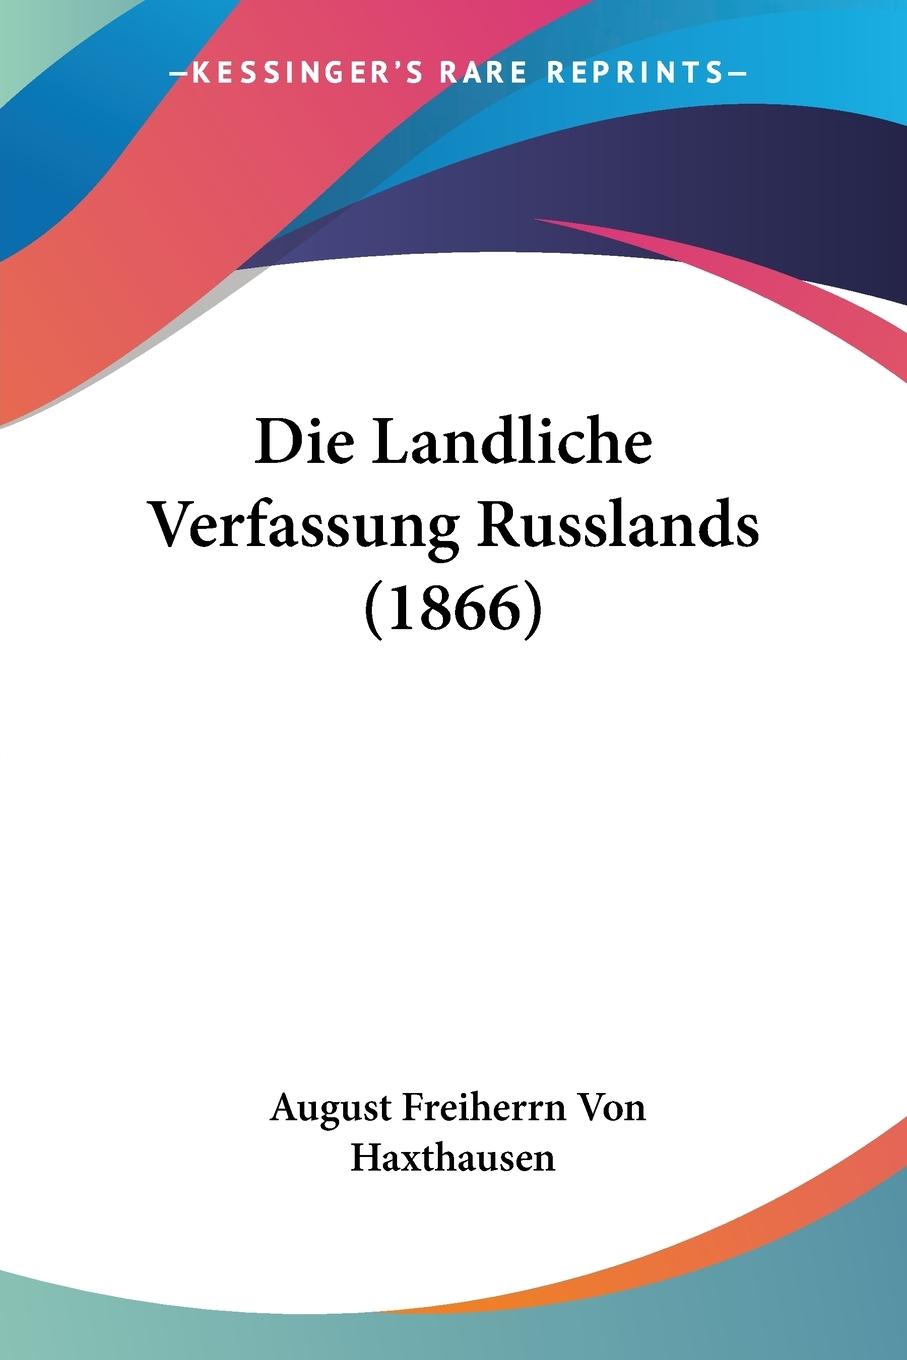 Die Landliche Verfassung Russlands (1866) - Haxthausen, August Freiherrn Von